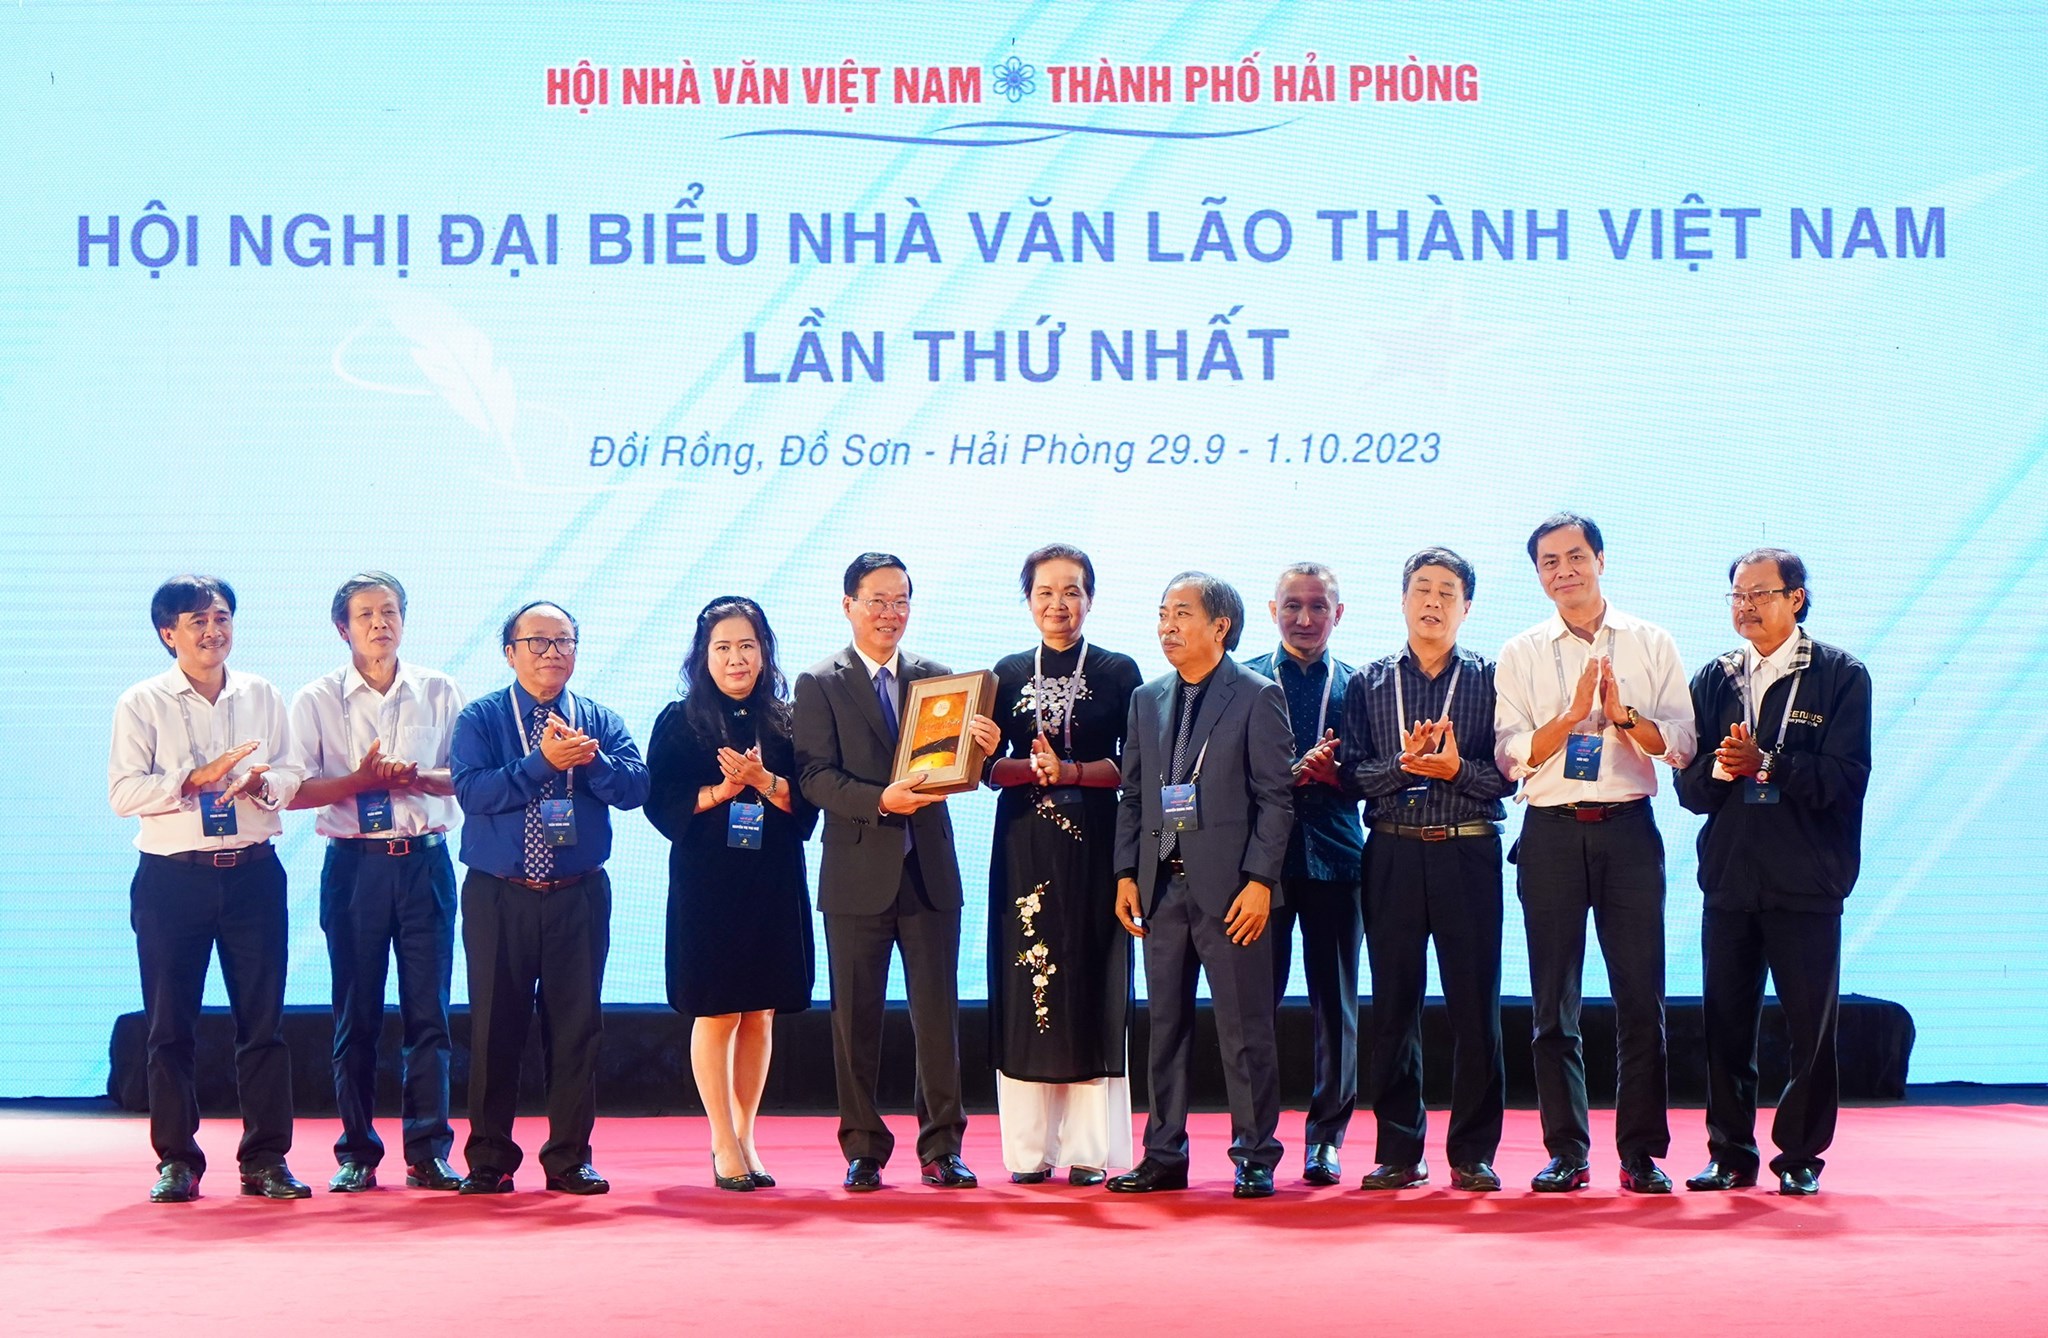 Dòng chảy kỳ vĩ của biển văn học Việt Nam - 10